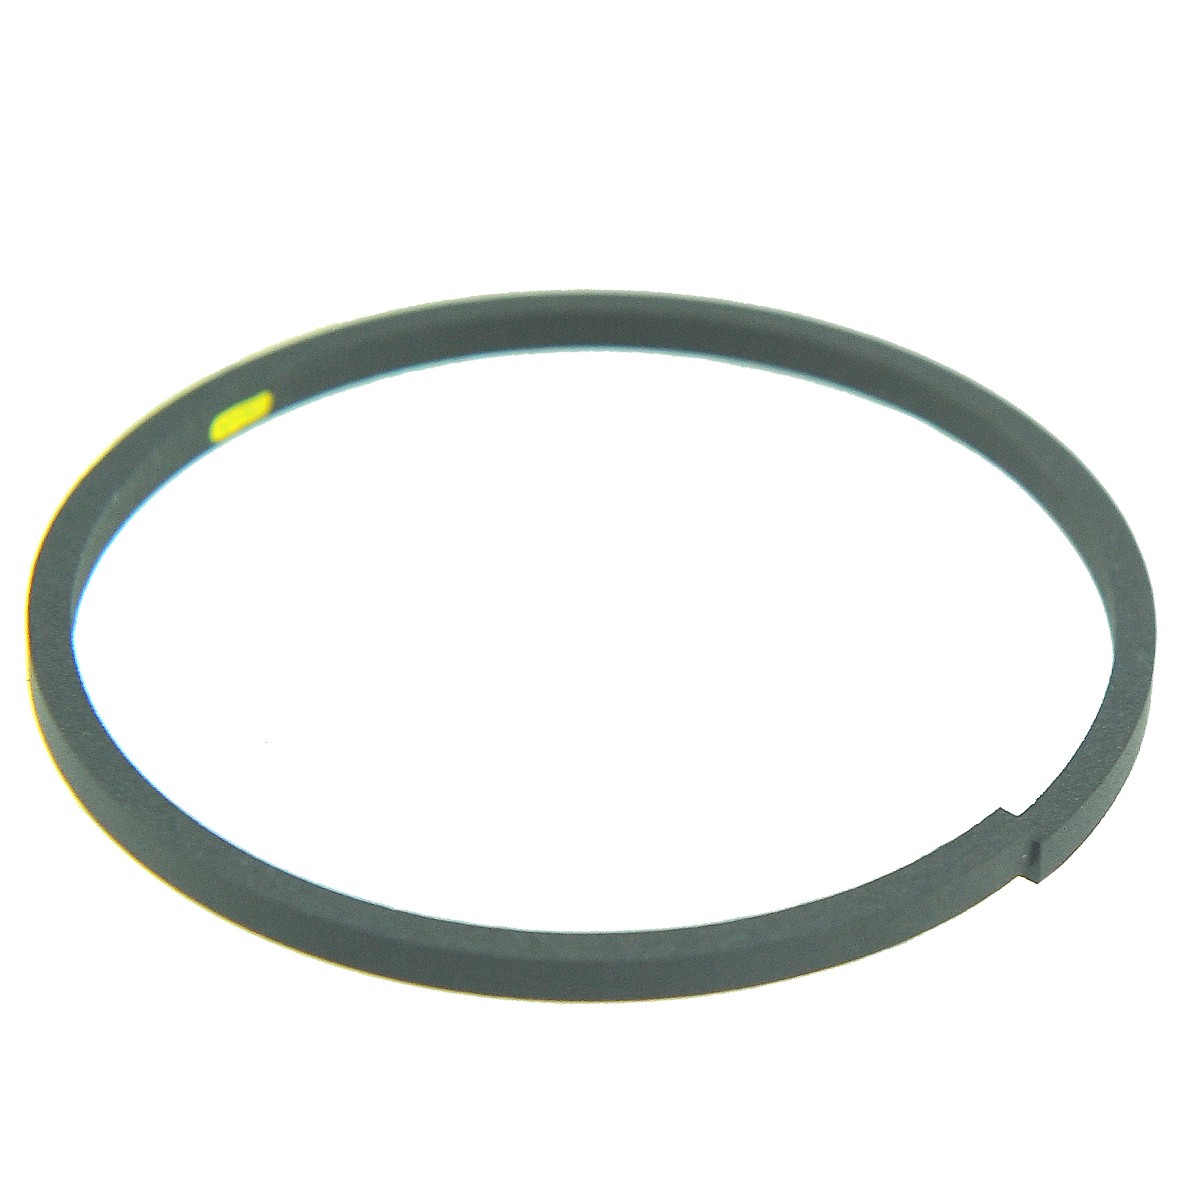 Spare ring / Ø48/52 x 2.50 mm / Kubota GL23/GL220/GL240/L3010/KL210/L3600/L4200 / T1853-61510